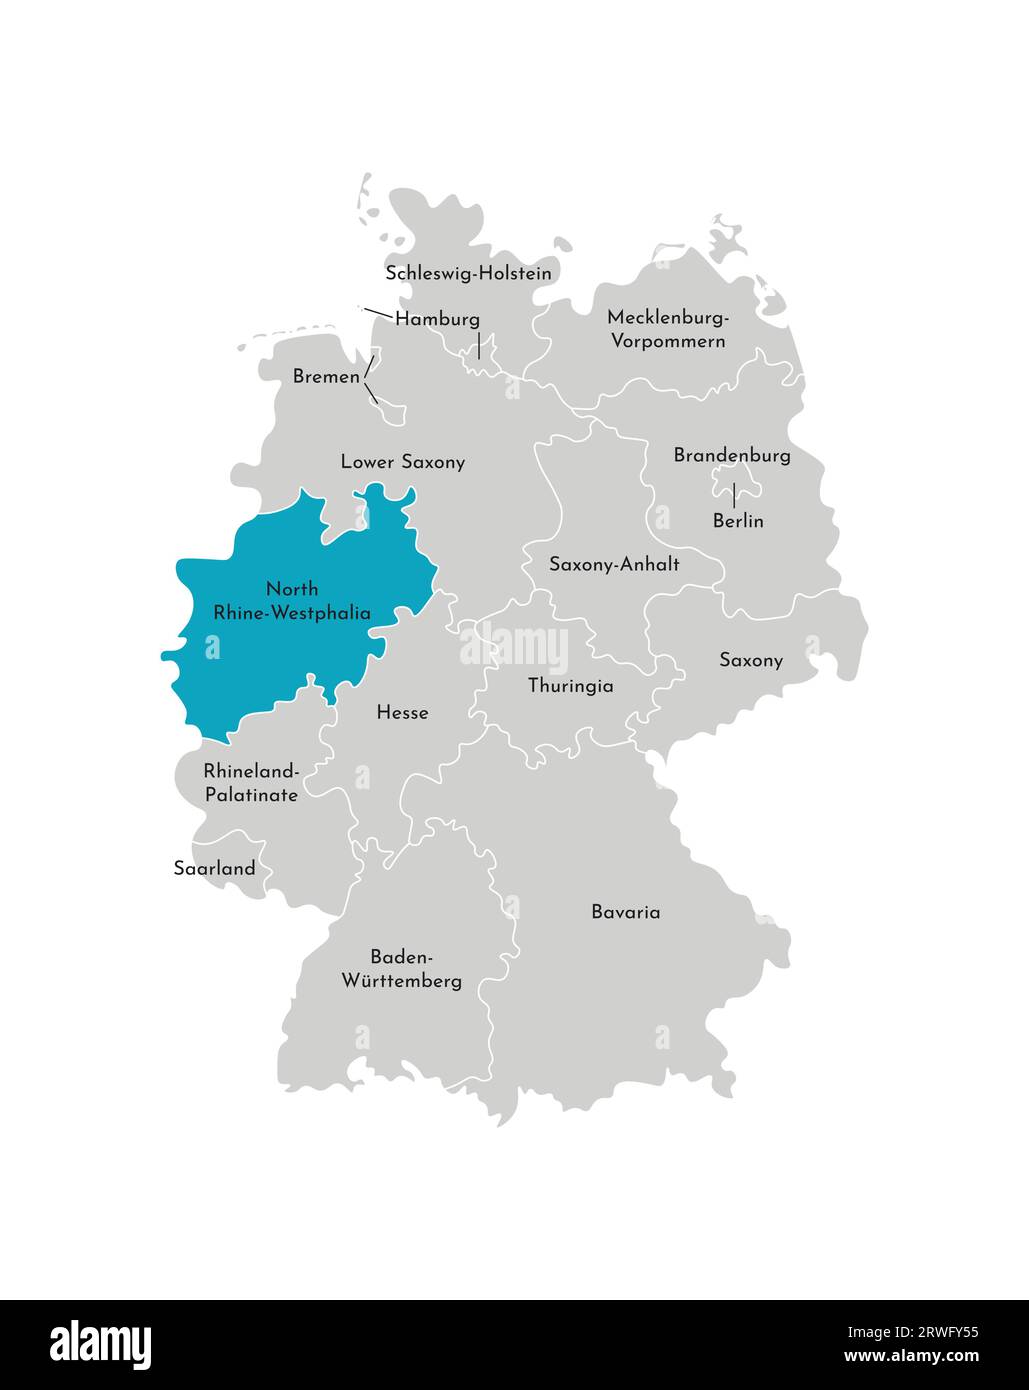 Illustrazione vettoriale isolata della mappa amministrativa semplificata della Germania. Silhouette blu della Renania settentrionale-Vestfalia (stato). Silhouette grigie. Bianco o Illustrazione Vettoriale